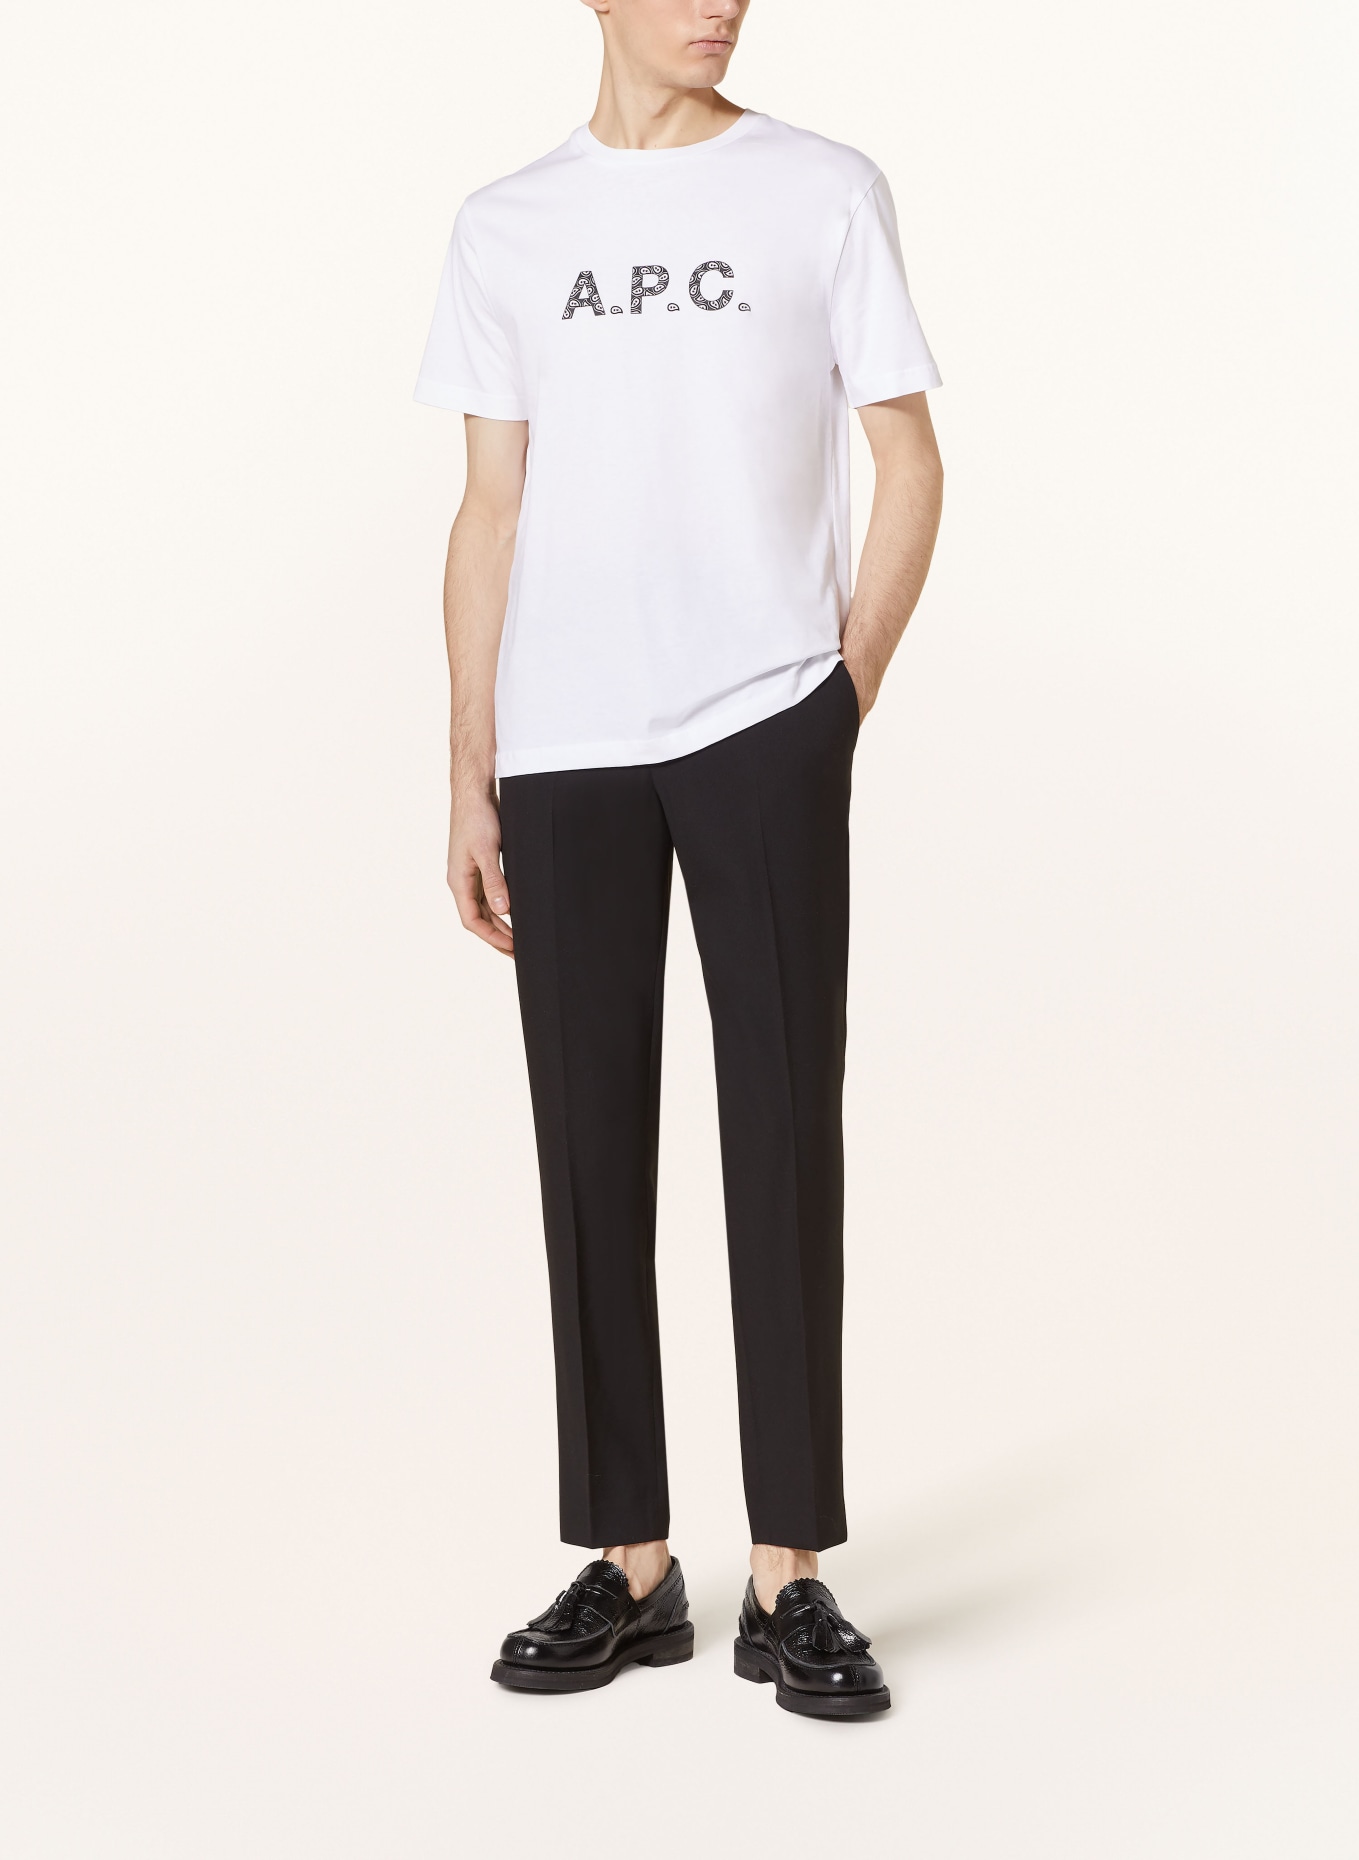 A.P.C. T-shirt JAMES, Color: WHITE/ BLACK (Image 2)